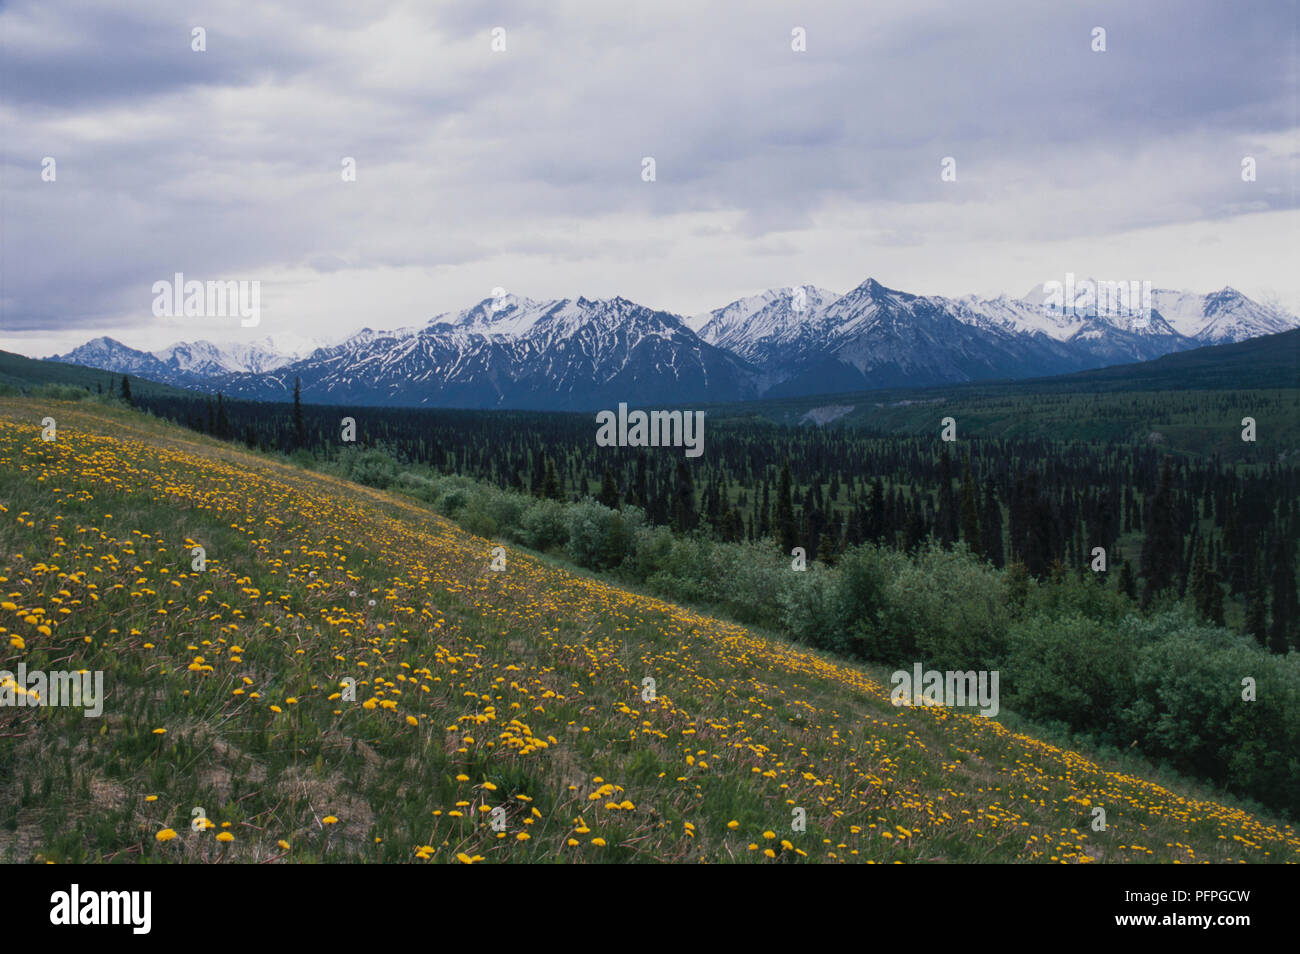 USA, Alaska, die Fülle des gelben Wildblumen wachsen in Hügellage mit schneebedeckten Gipfel der Chugach Berge in der Ferne unter bedecktem Himmel Stockfoto